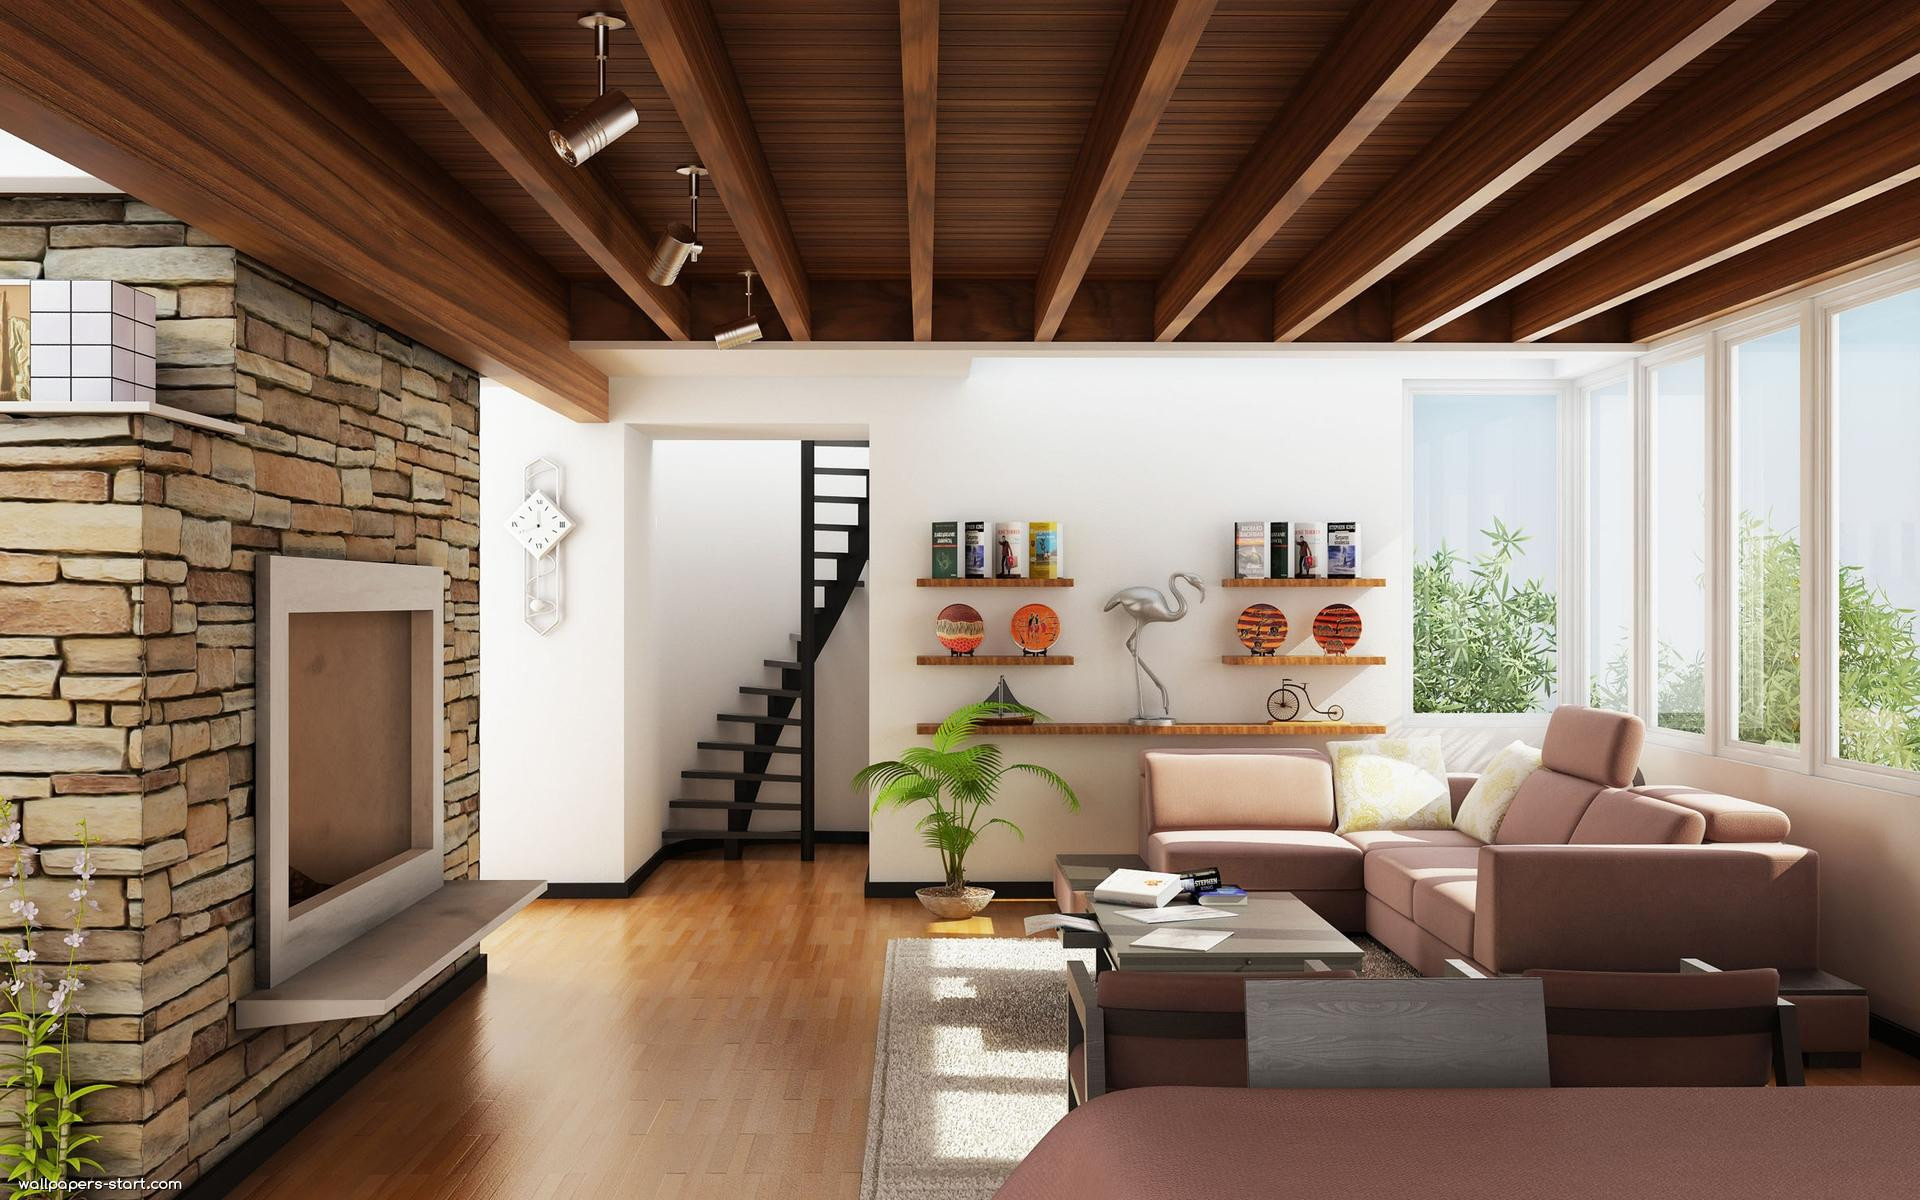 Modern House Living Room
 Wallpapers for Living Room Design Ideas in UK